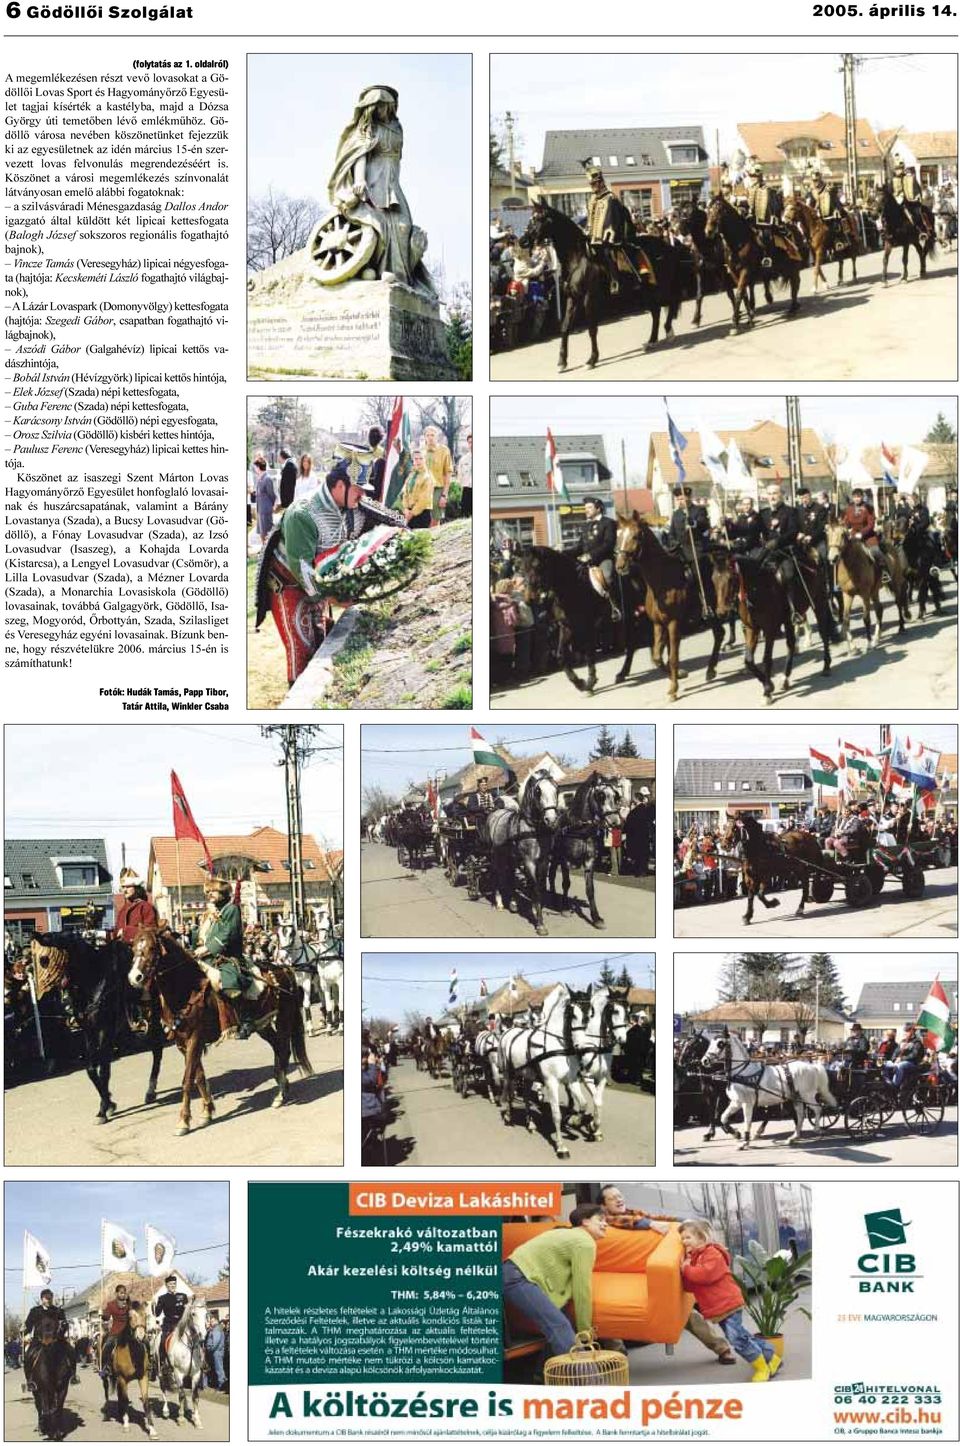 Gödöllõ városa nevében köszönetünket fejezzük ki az egyesületnek az idén március 15-én szervezett lovas felvonulás megrendezéséért is.